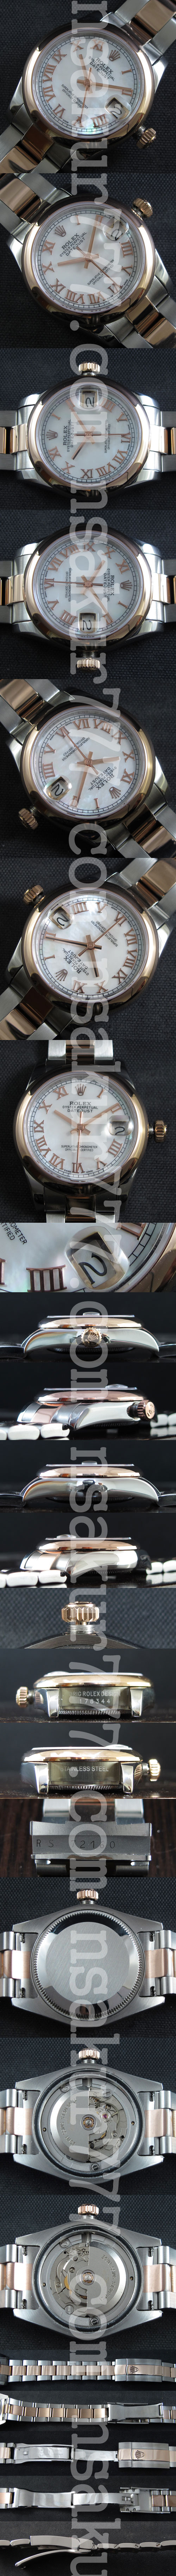 【日本国内発送】ロレックスデイトジャストミディアム メンズ腕時計おすすめ